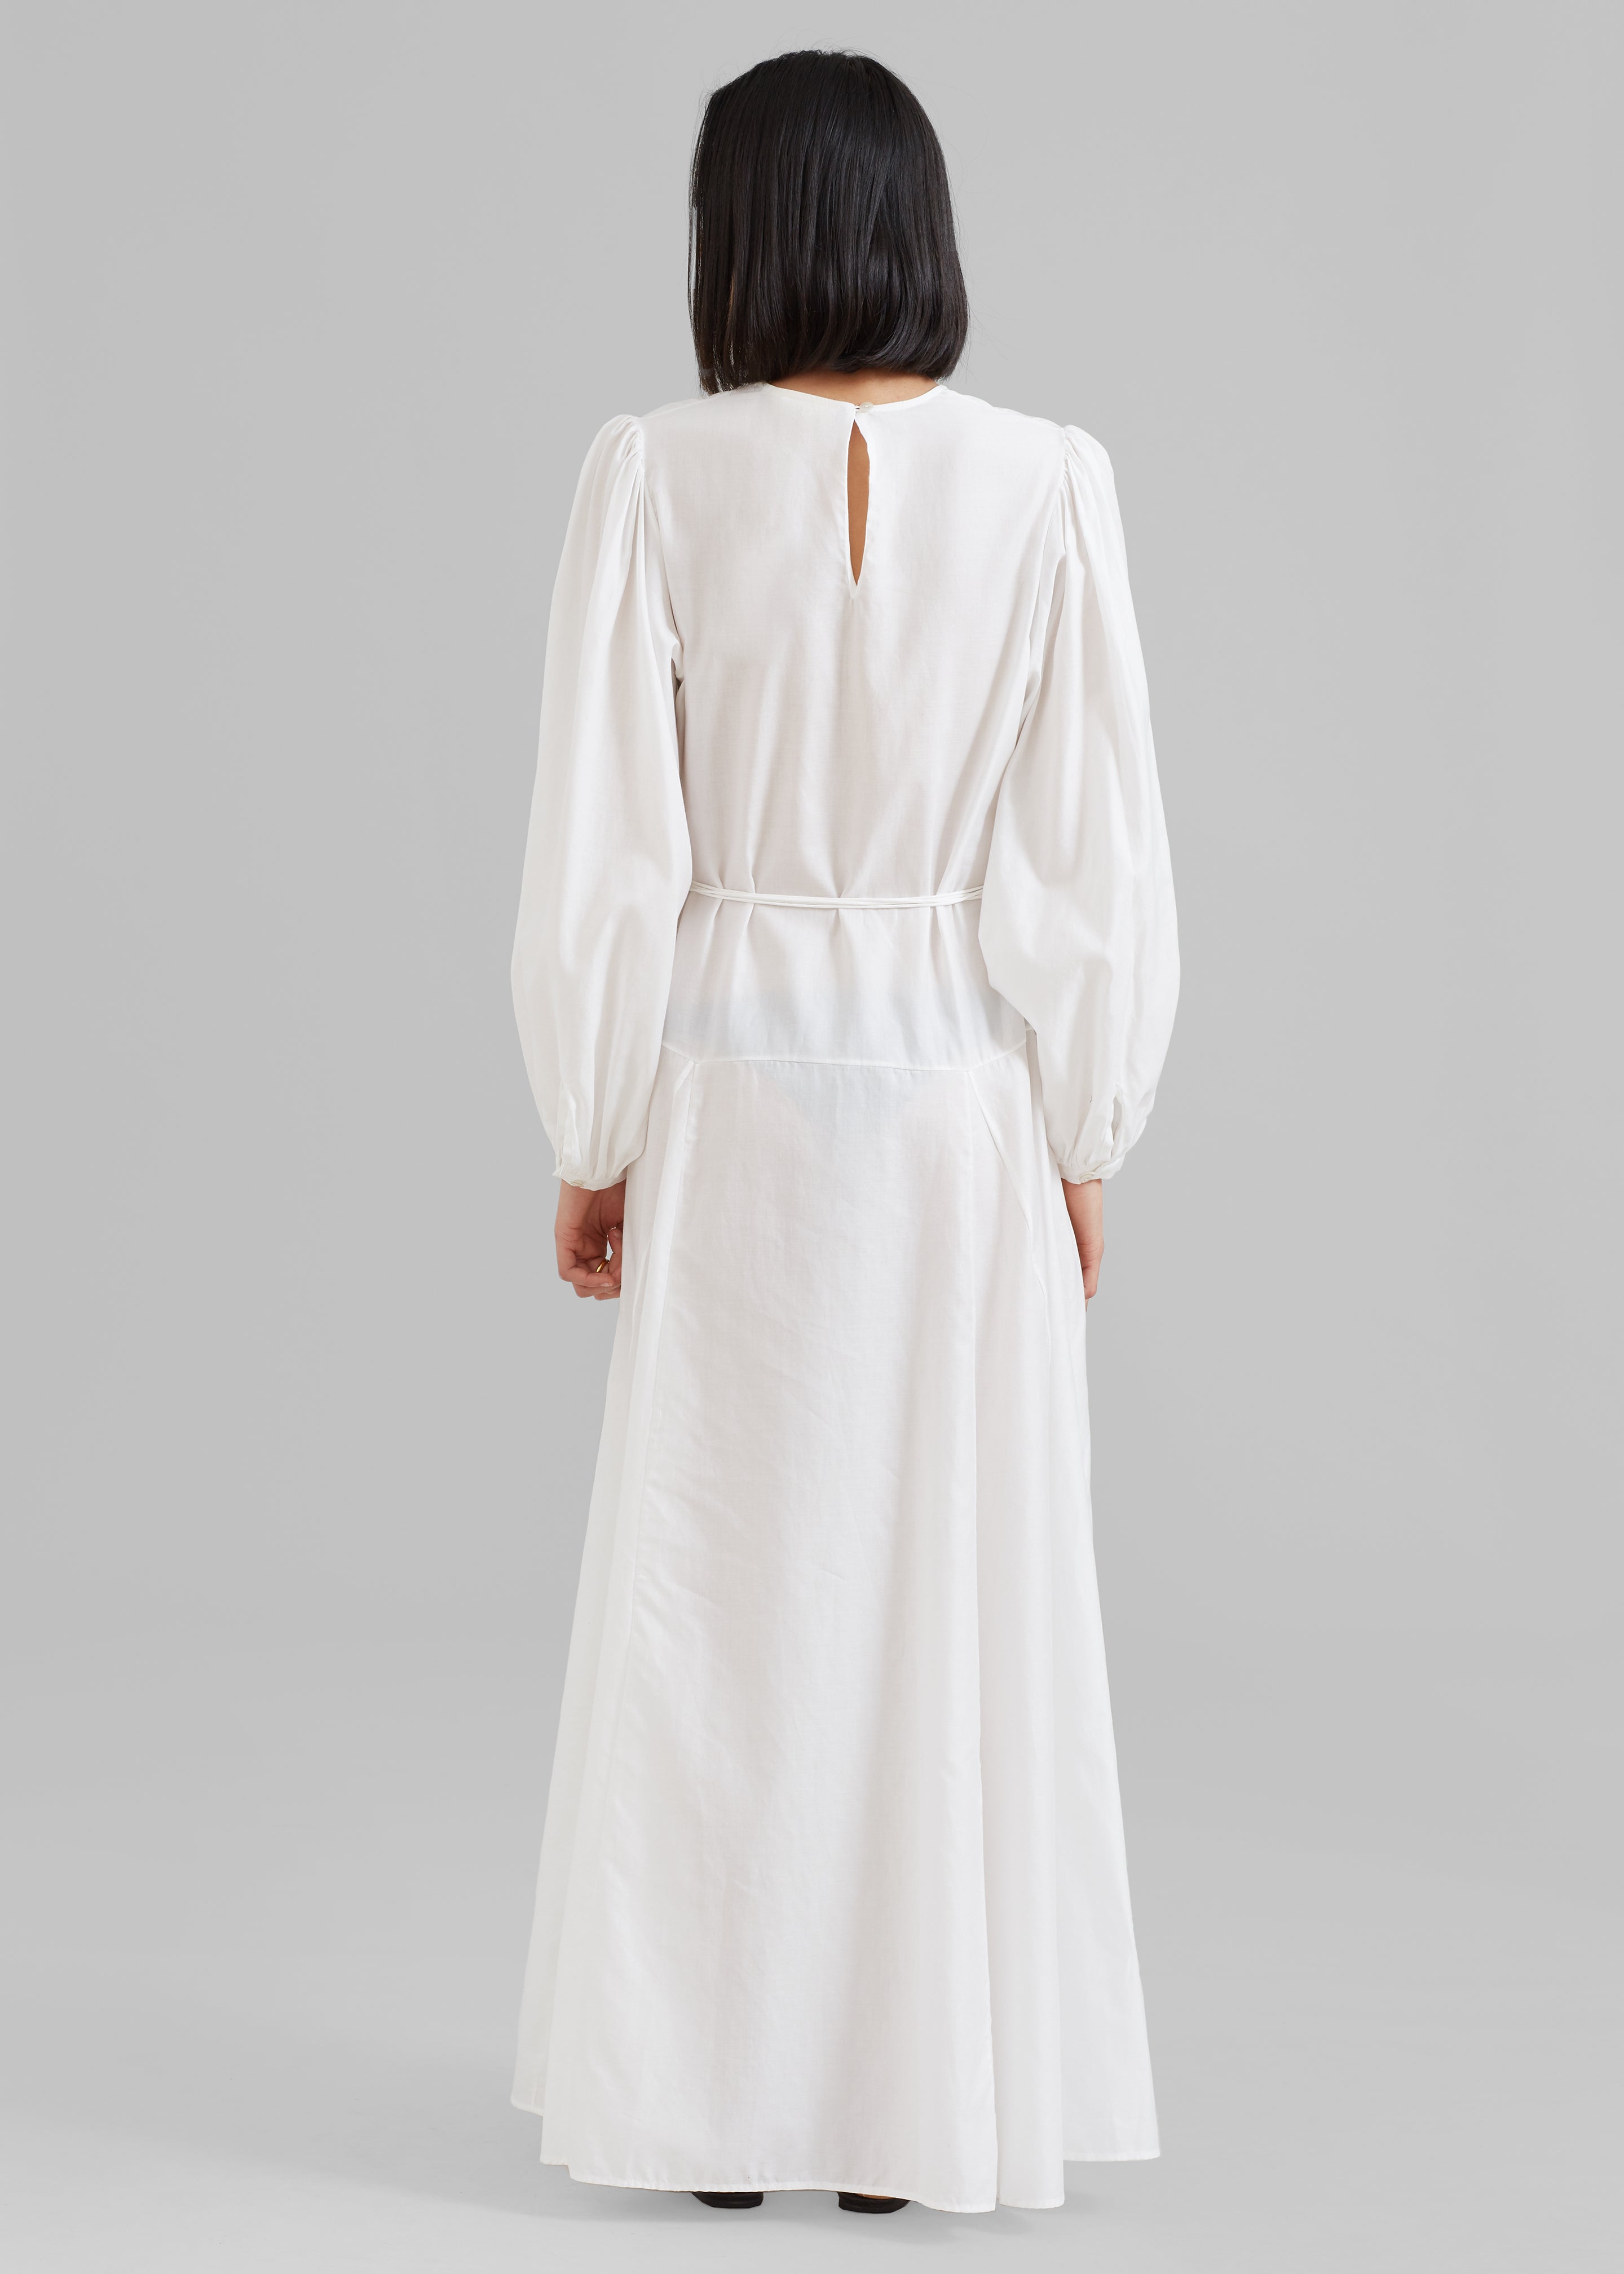 MATIN Cortona Dress - White - 6